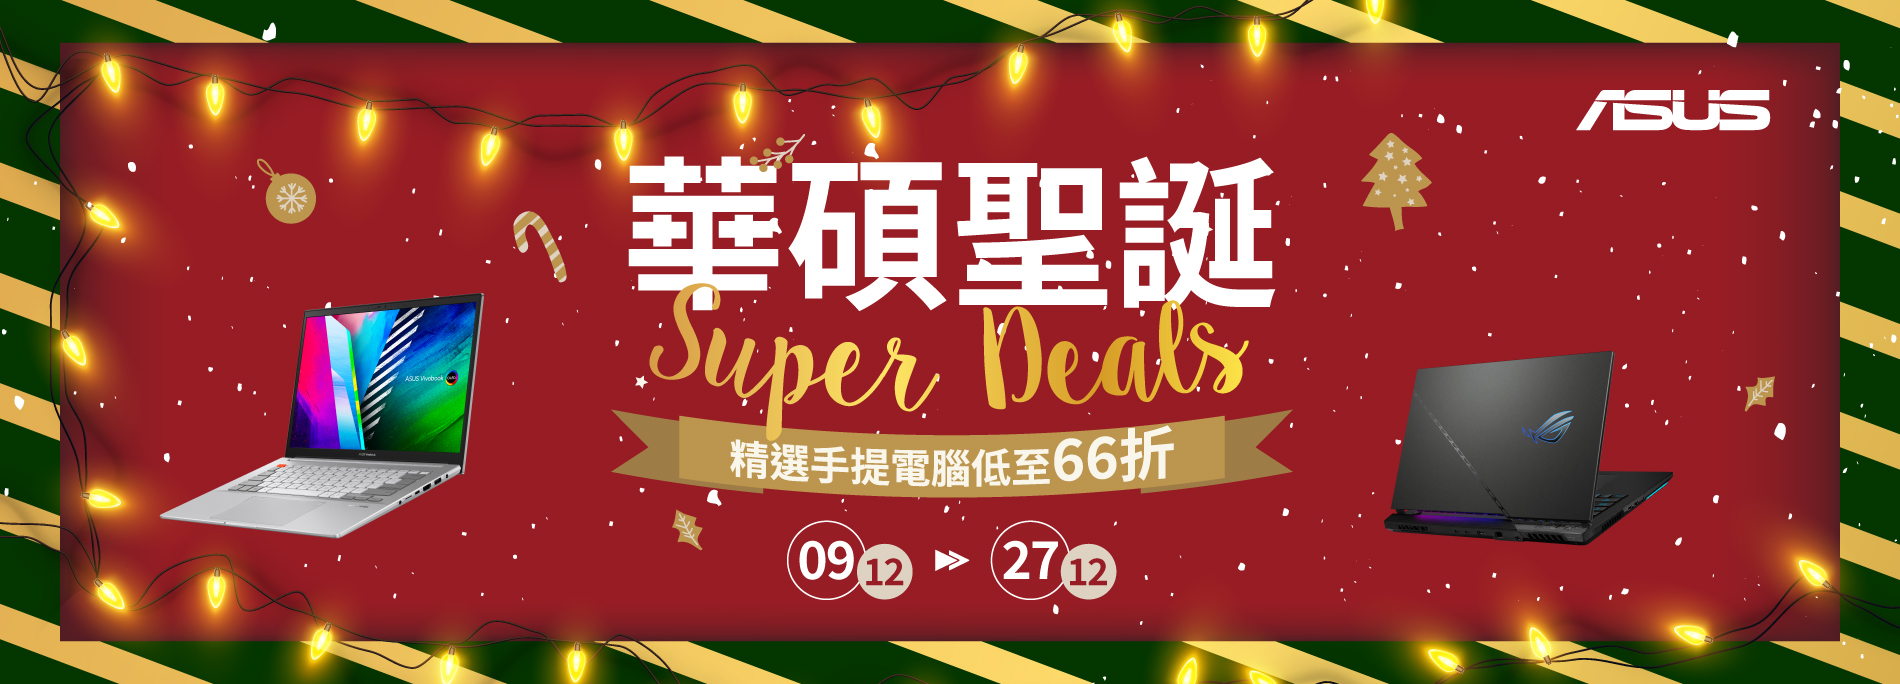 【聖誕勁減🎄】華碩聖誕Super Deals🎉折扣低至66折